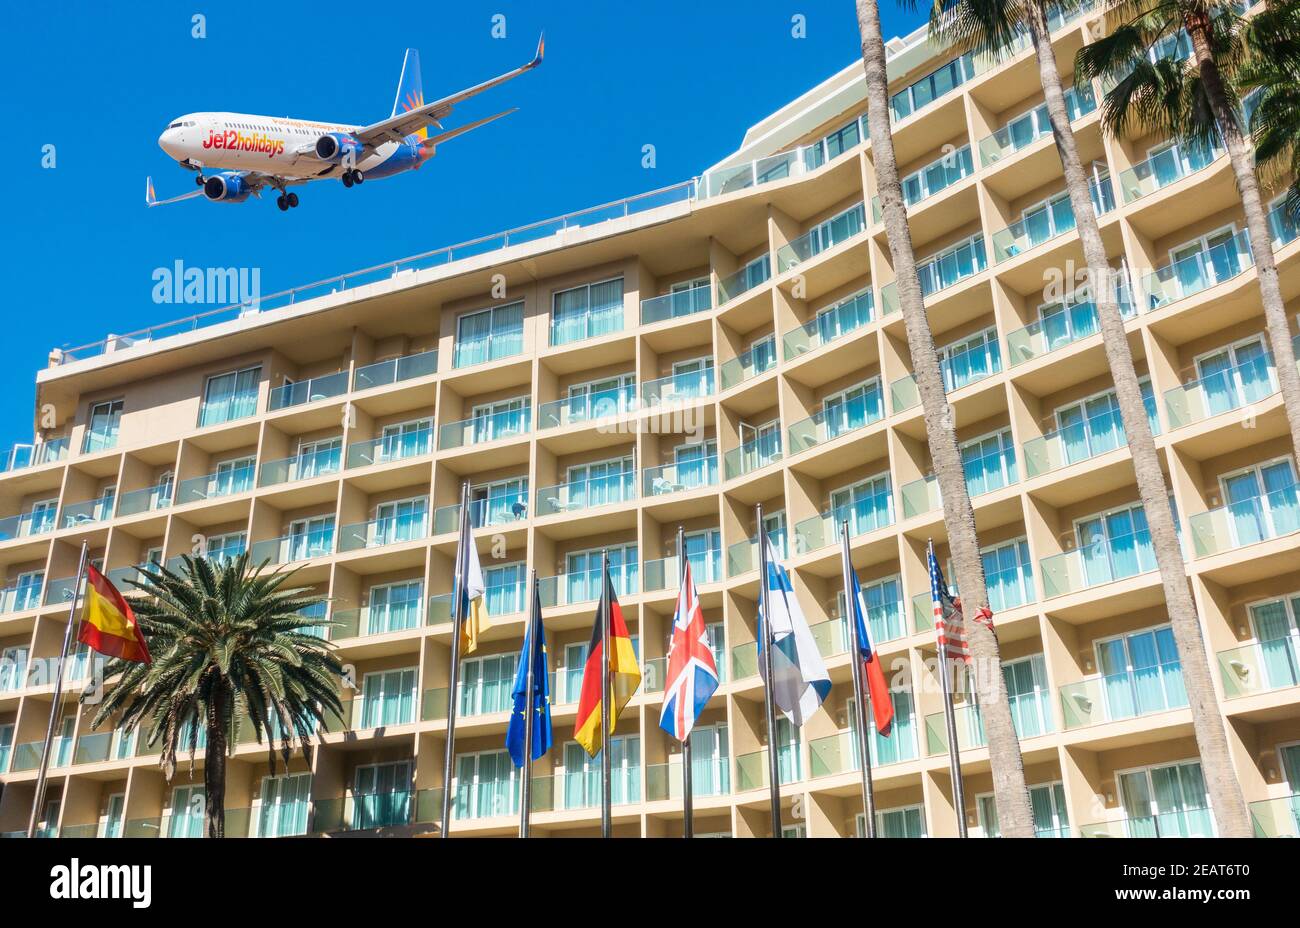 Zusammengesetztes Bild von Jet2.com Flugzeugen, die über das Hotel fliegen. Quarantäne-Hotel, Coronavirus, Covid-Konzept. Stockfoto